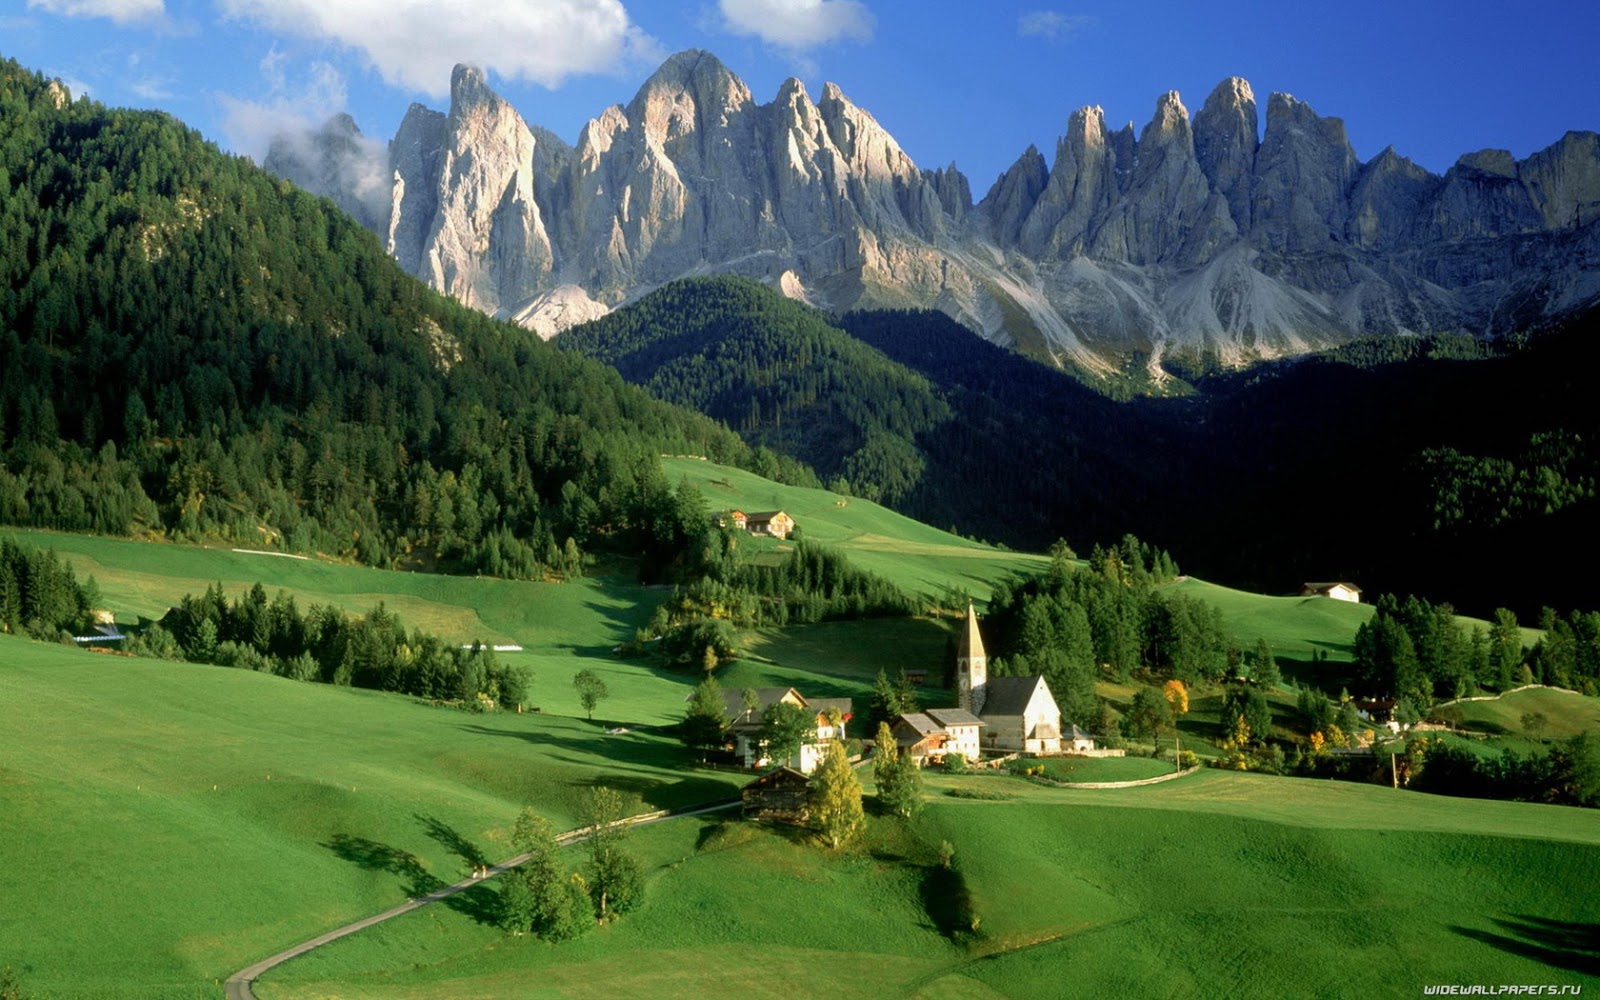 Dolomites Mountains Italy